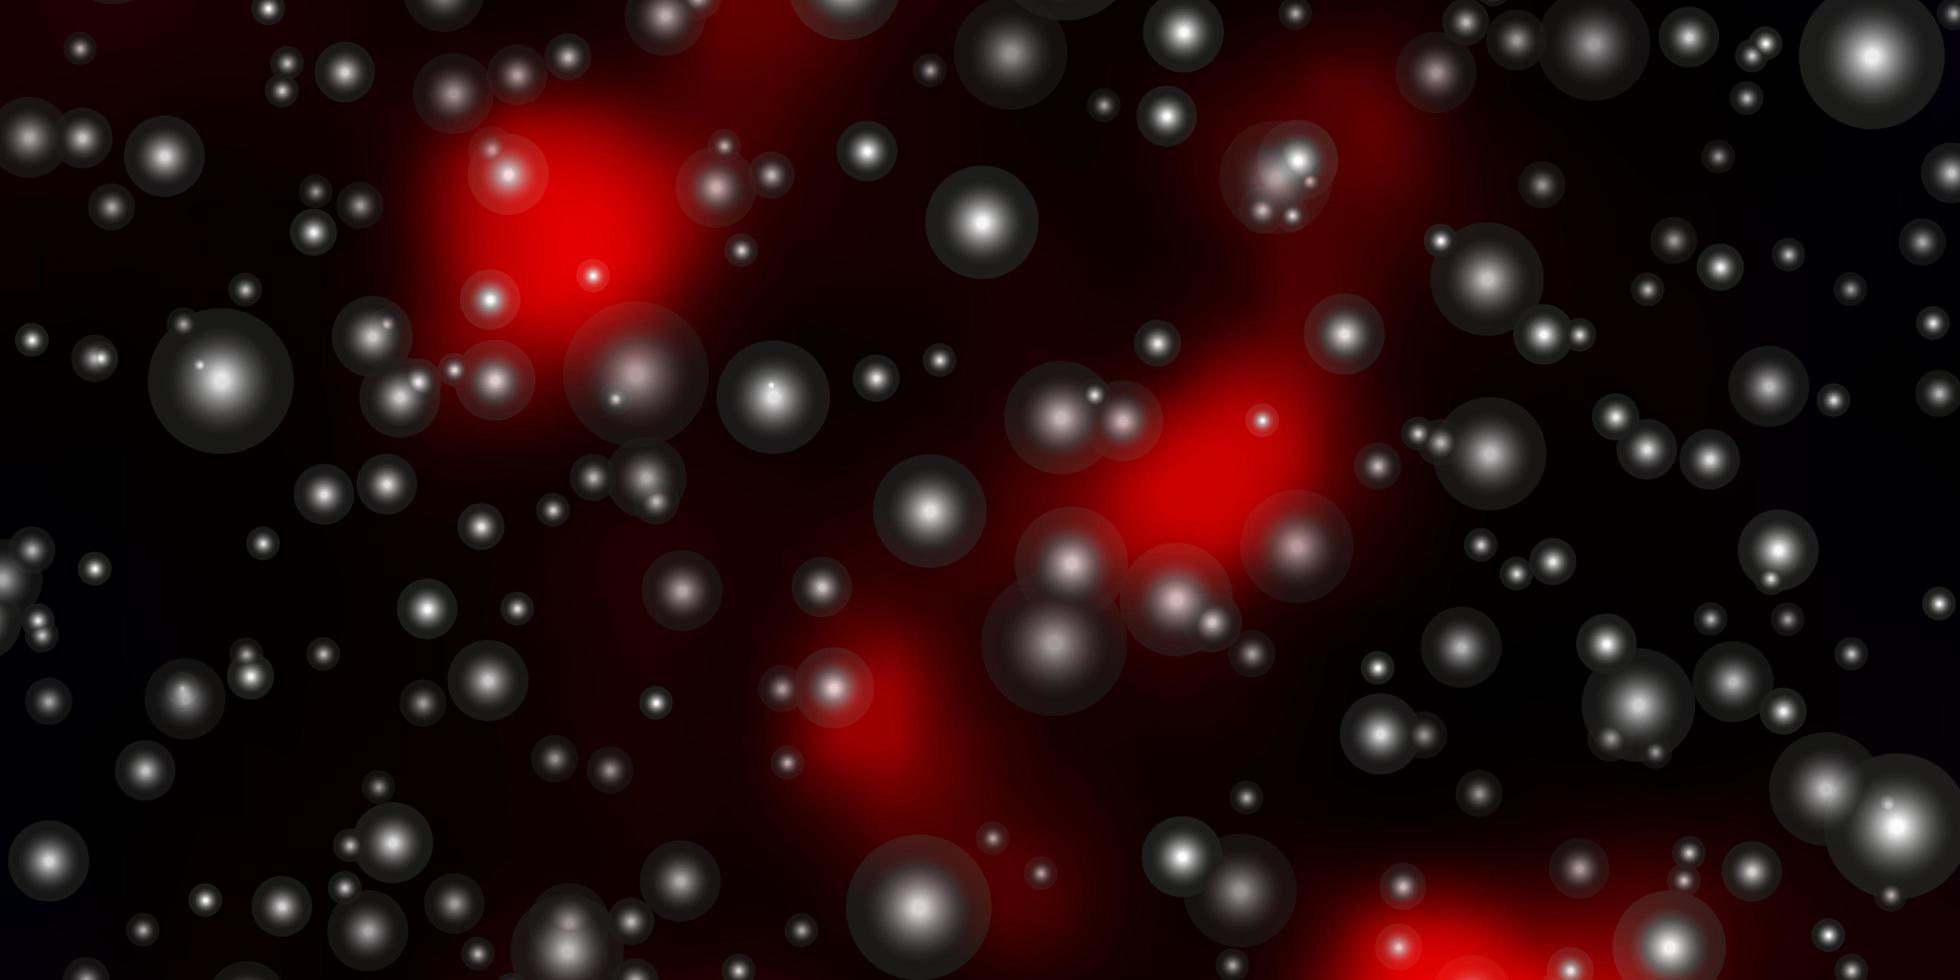 modèle vectoriel rouge foncé avec des étoiles au néon. illustration colorée avec des étoiles dégradées abstraites. thème pour téléphones portables.